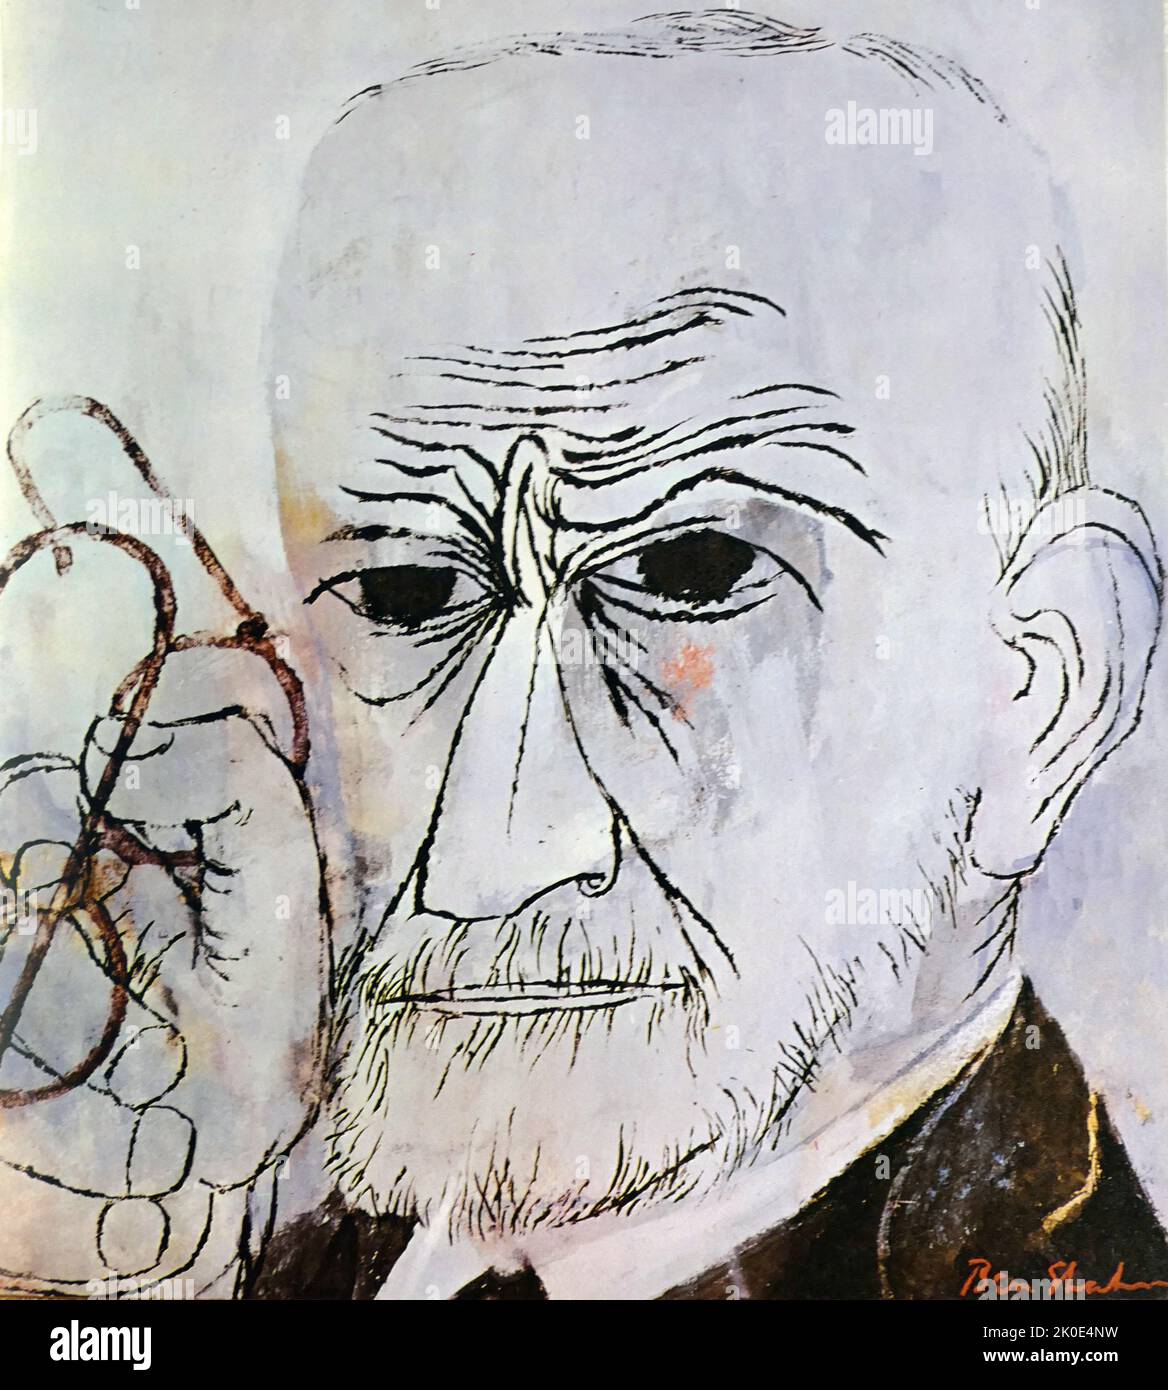 Sigmund Freud (1856. - 23. September 1939) österreichischer Neurologe und Begründer der Psychoanalyse, einer klinischen Methode zur Behandlung der Psychopathologie im Dialog zwischen einem Patienten und einem Psychoanalytiker. Porträt von Ben Shahn 1956. Stockfoto